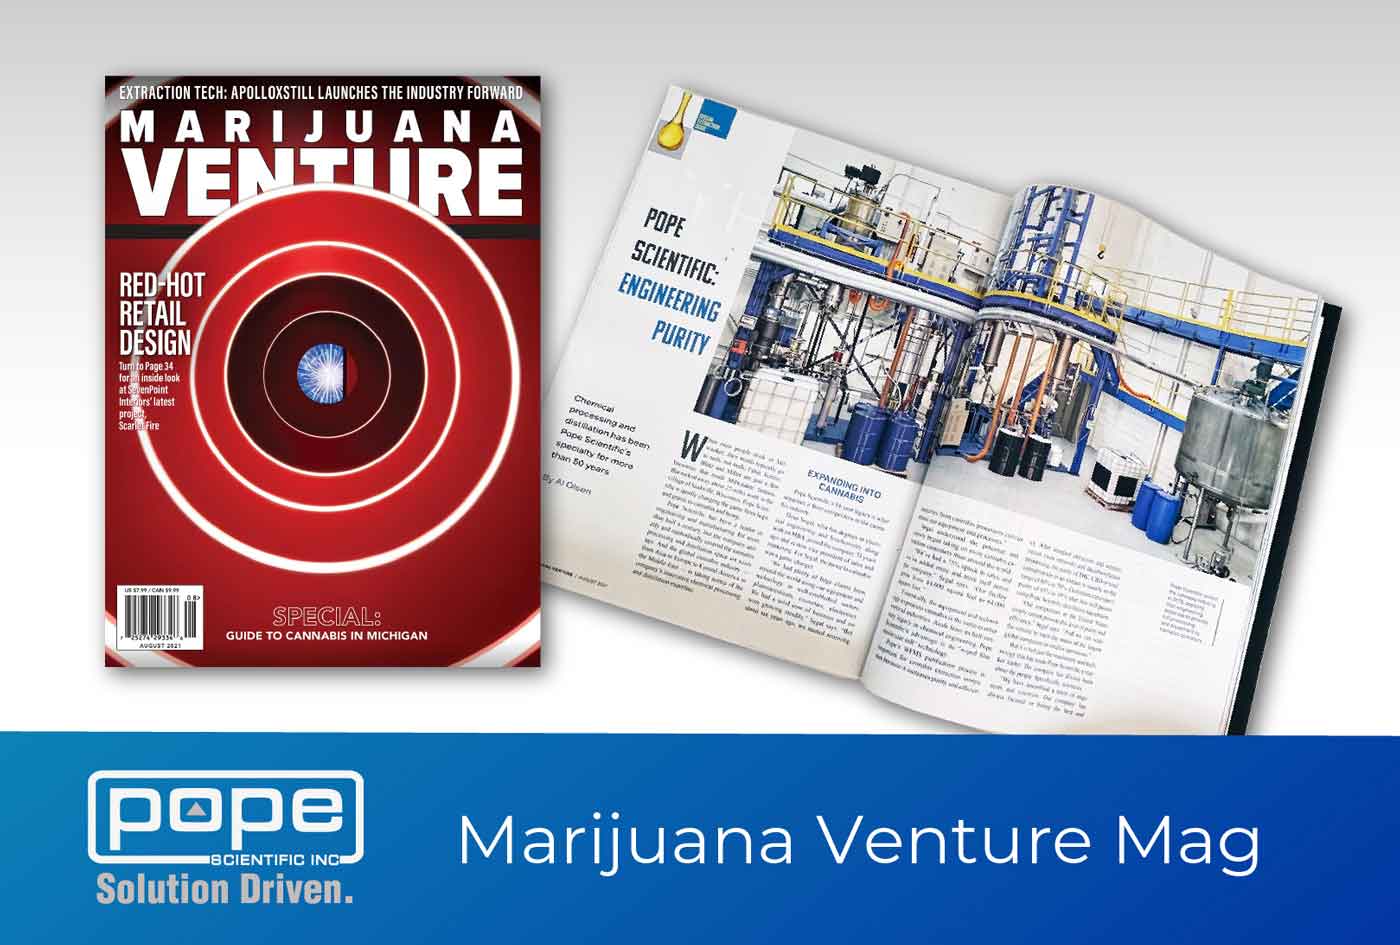 Pope Featured in Marijuana Venture Magazine